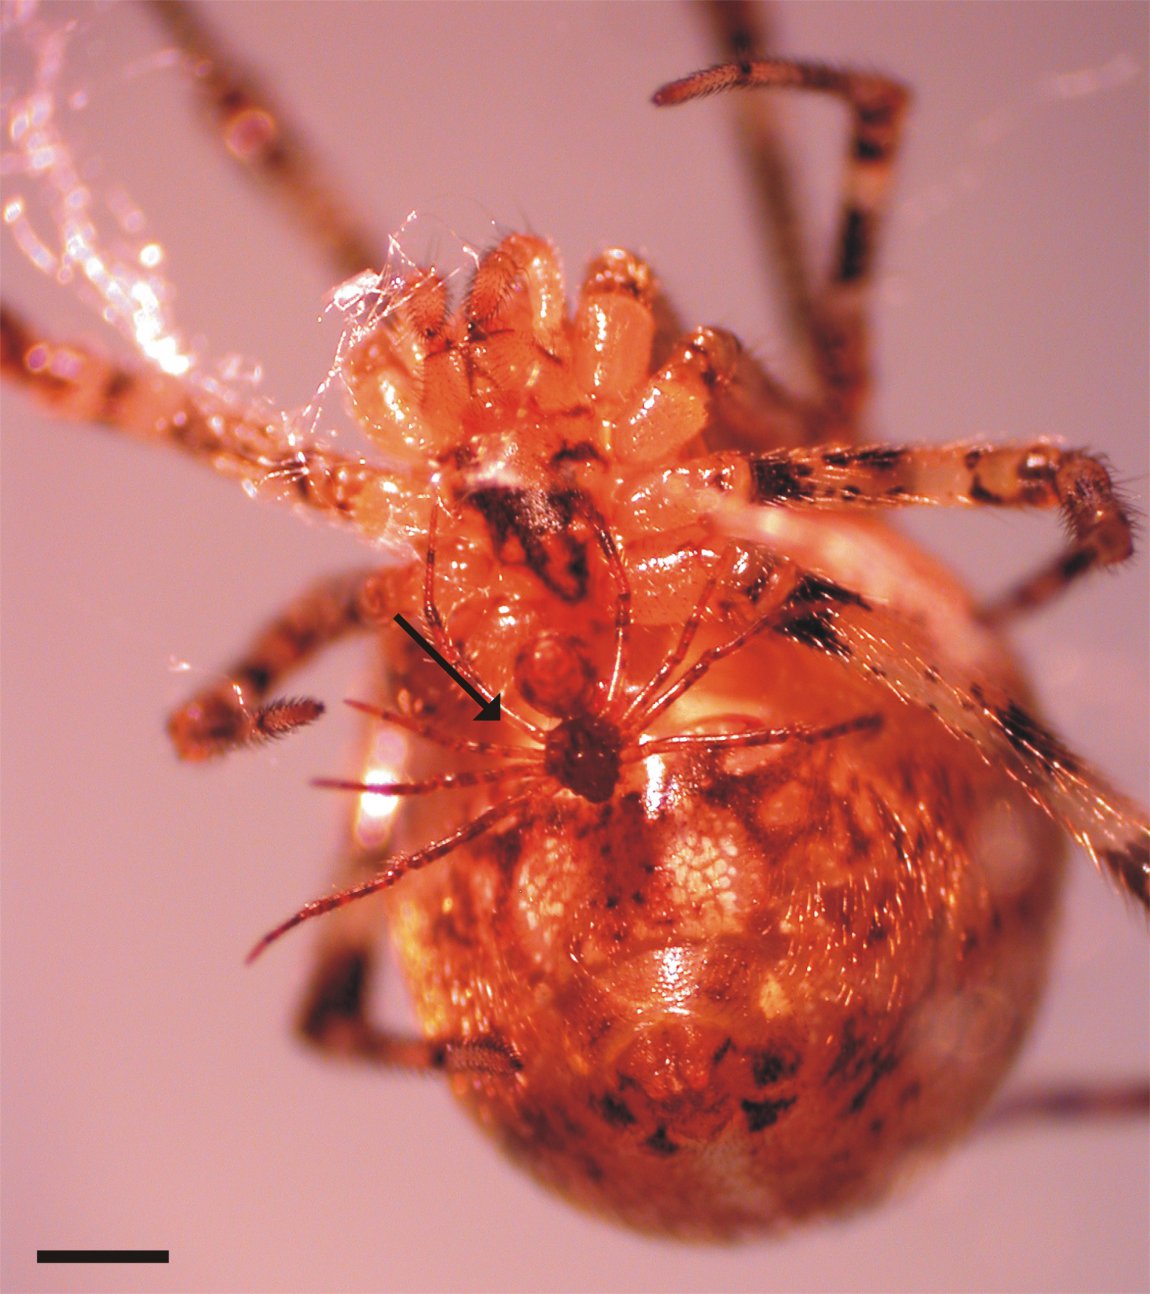 Male and female Tidarren spiders. Image credit: Margarita Ramos